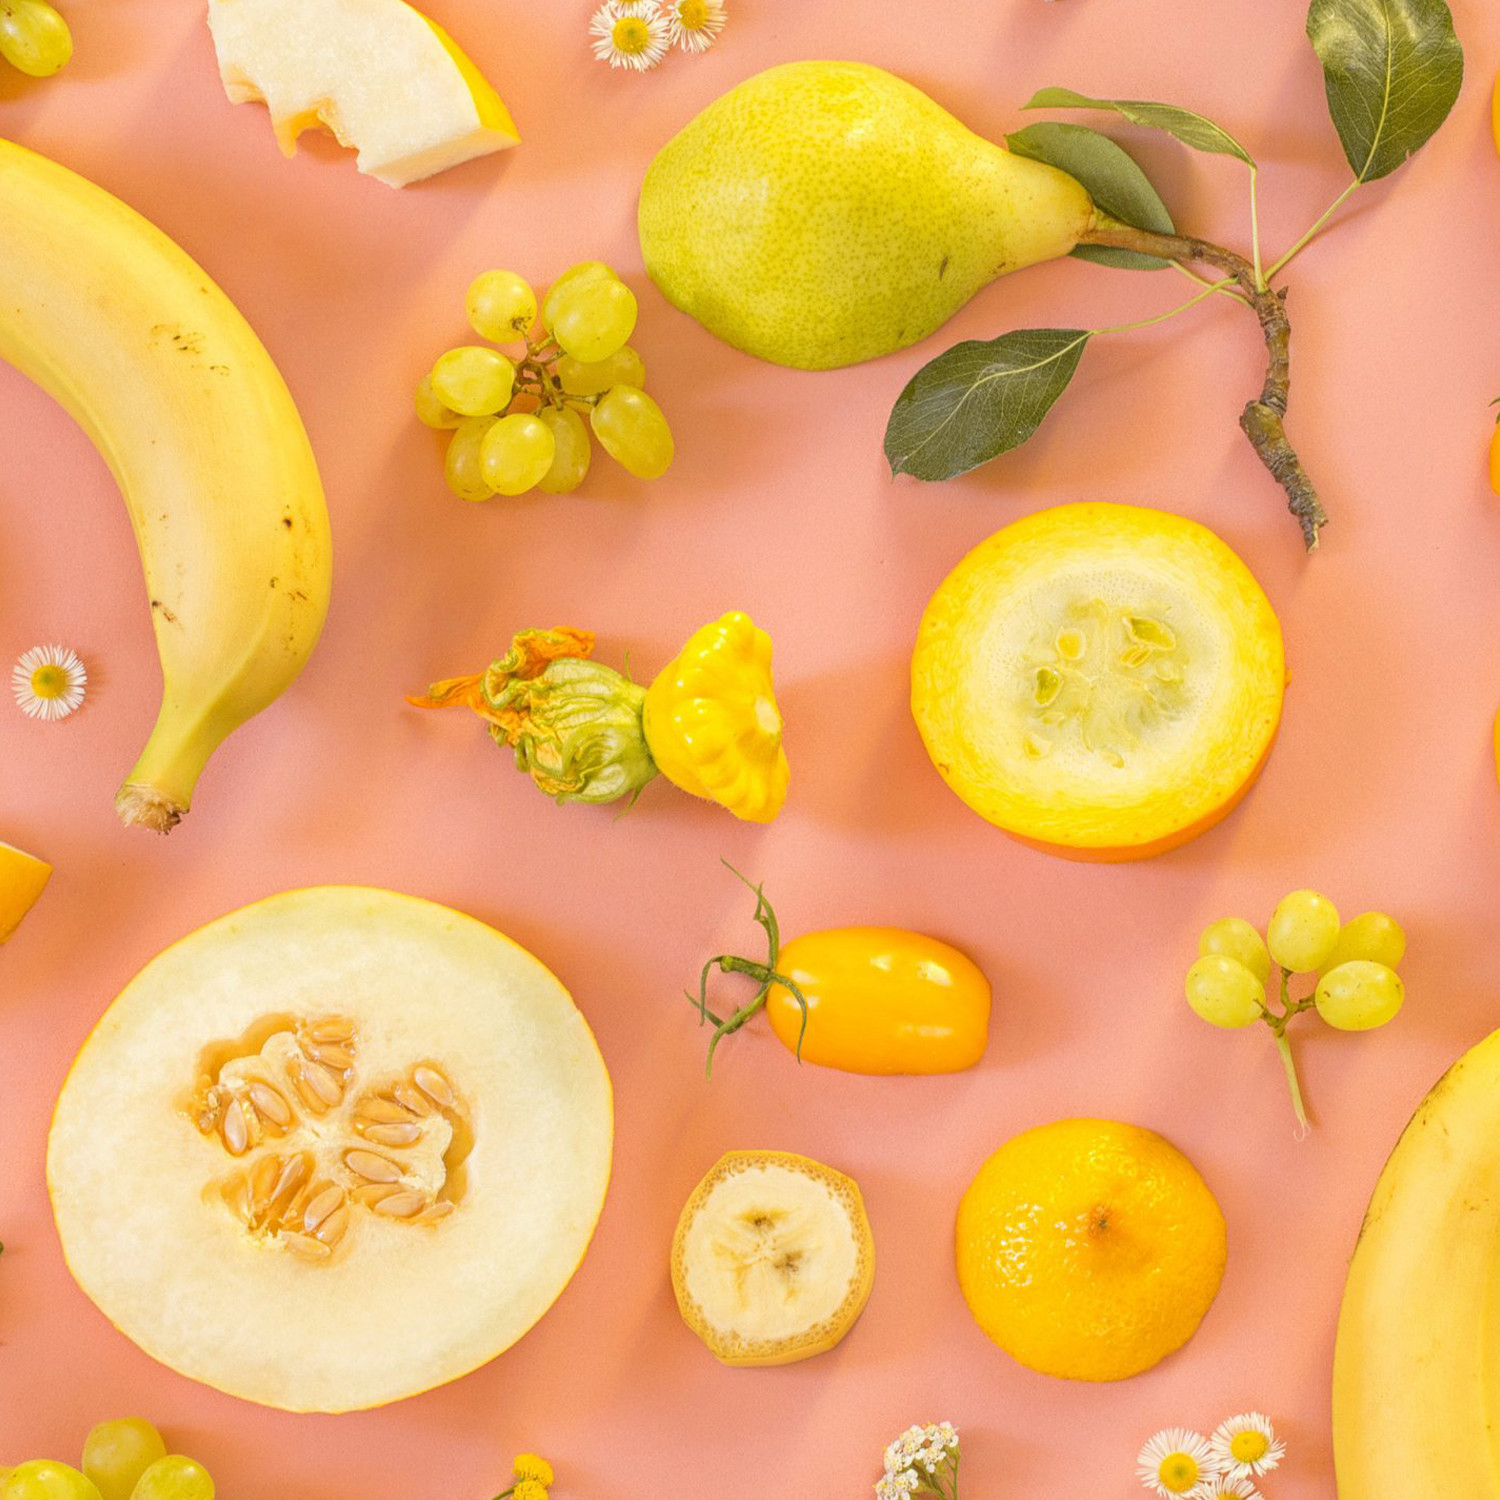 Stillleben mit Früchten und Gemüse: Banane, Trauben, Birne, Patisson, Melone, Tomate.